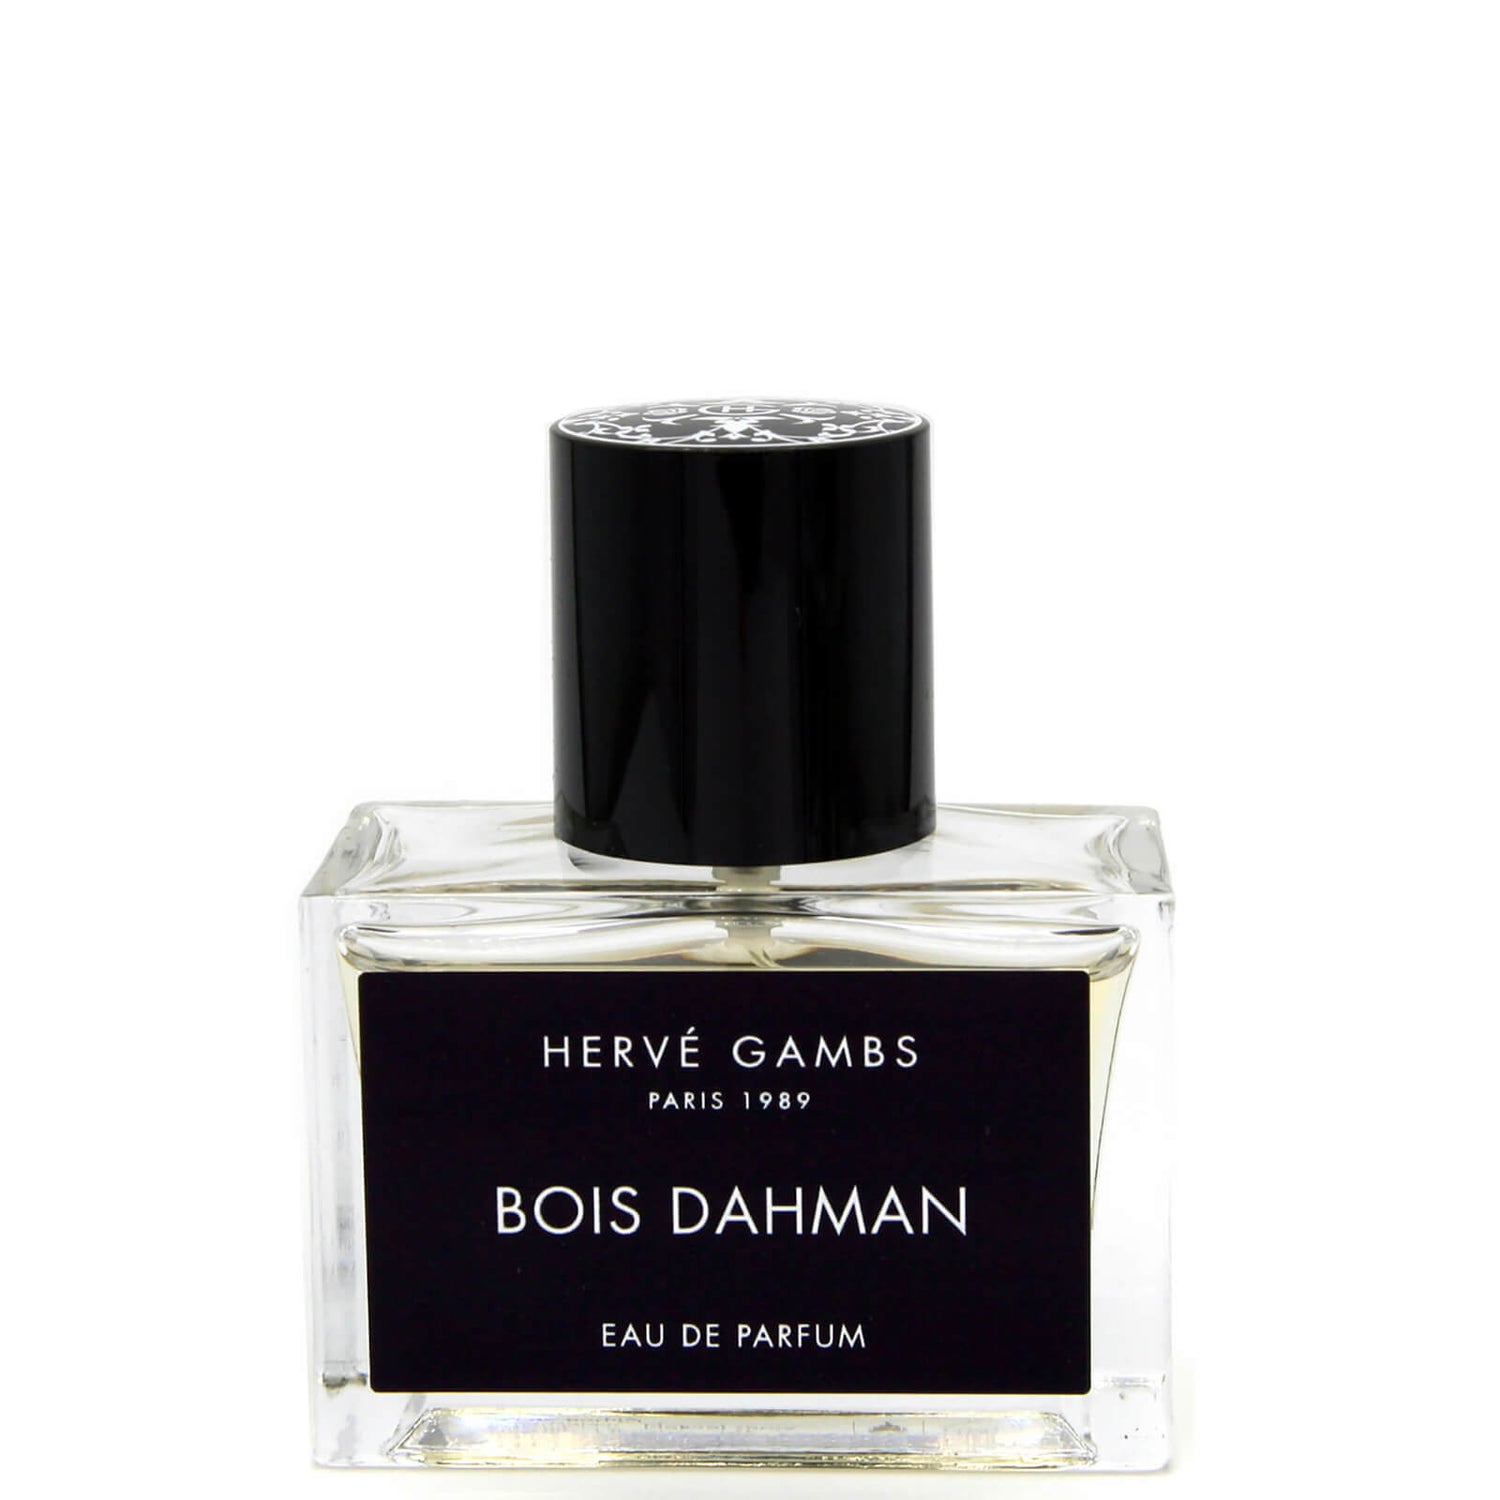 Hervé Gambs Bois Dahman Eau de Parfum 30ml